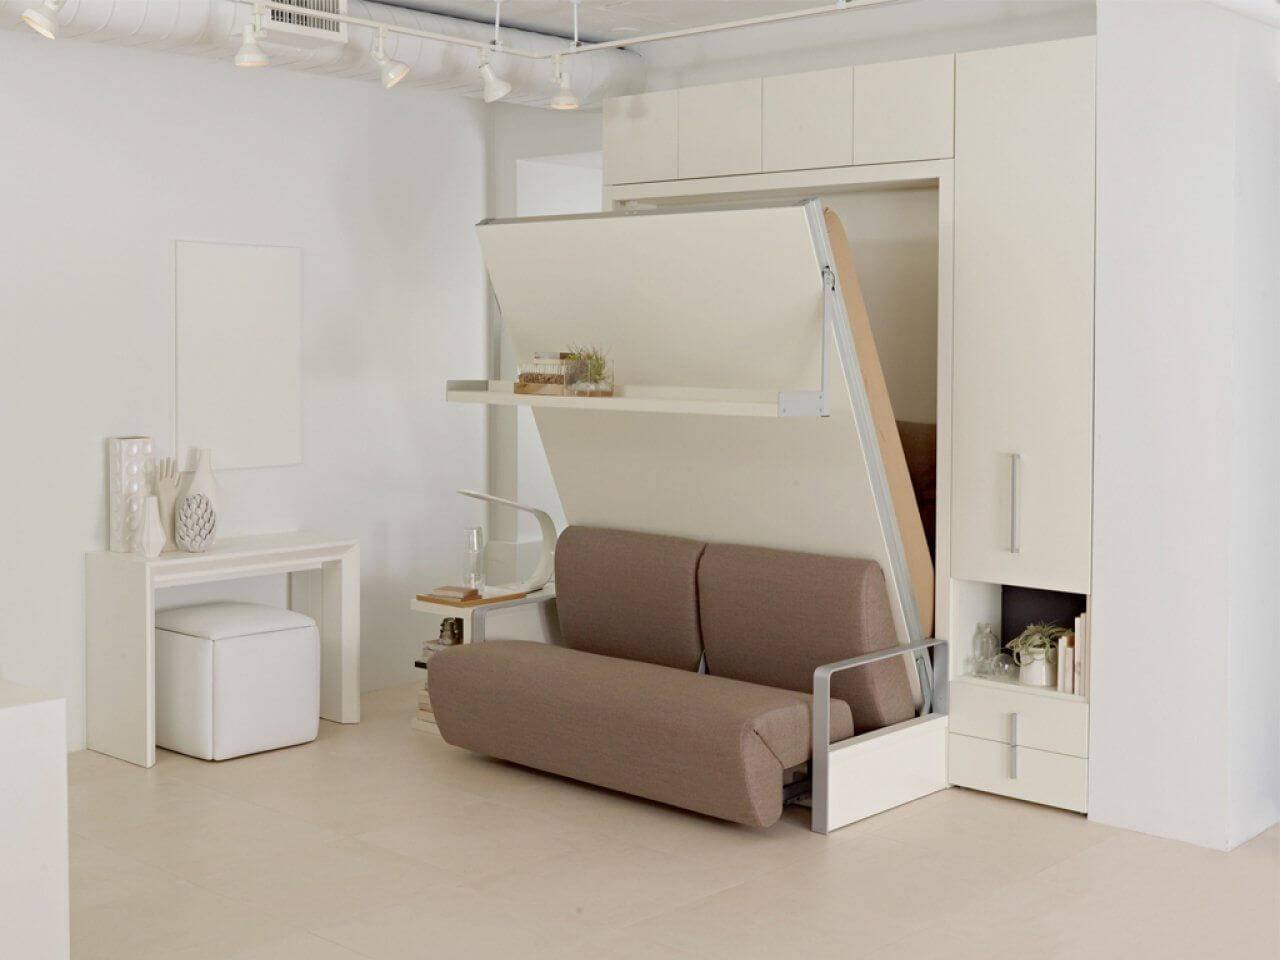 Мебель-трансформер для малогабаритной квартиры (60 фото): функциональность при минимуме пространства. трансформируемая мебель (35 фото) мебель-трансформер для малогабаритной квартиры — удачный выбор